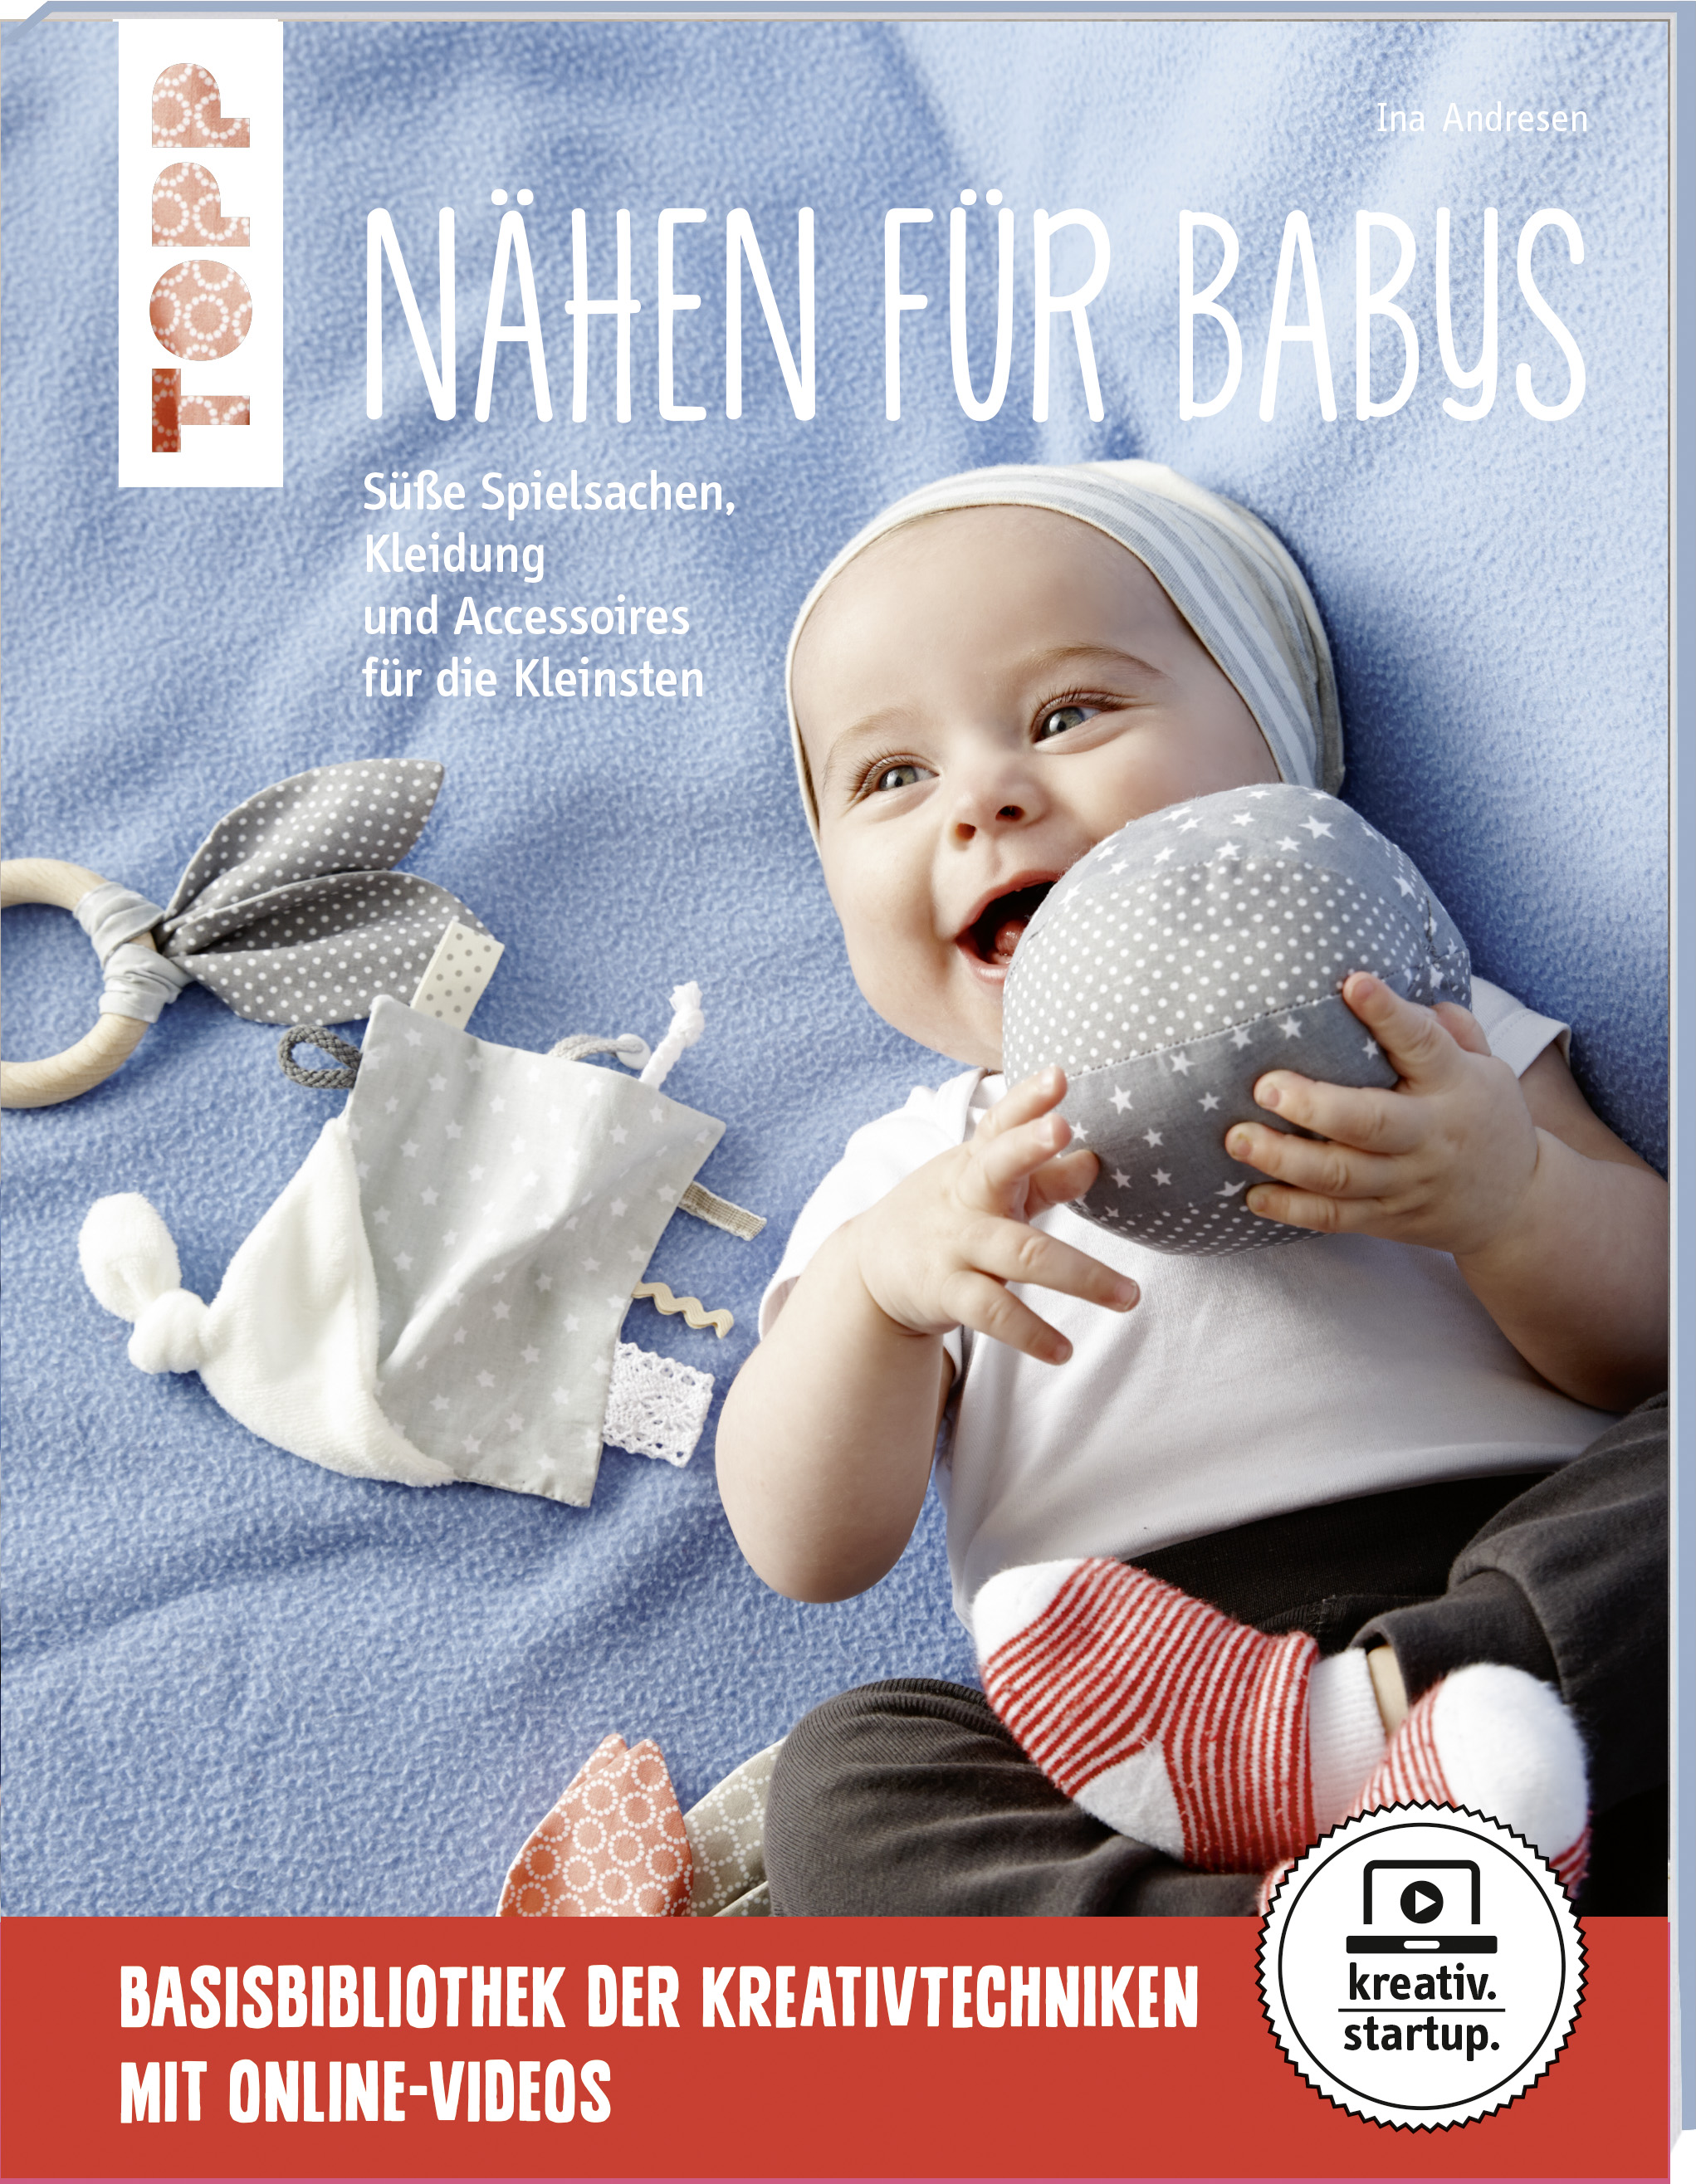 Nähen für Babys - Süße Spielsachen, Kleidung und Accessoires